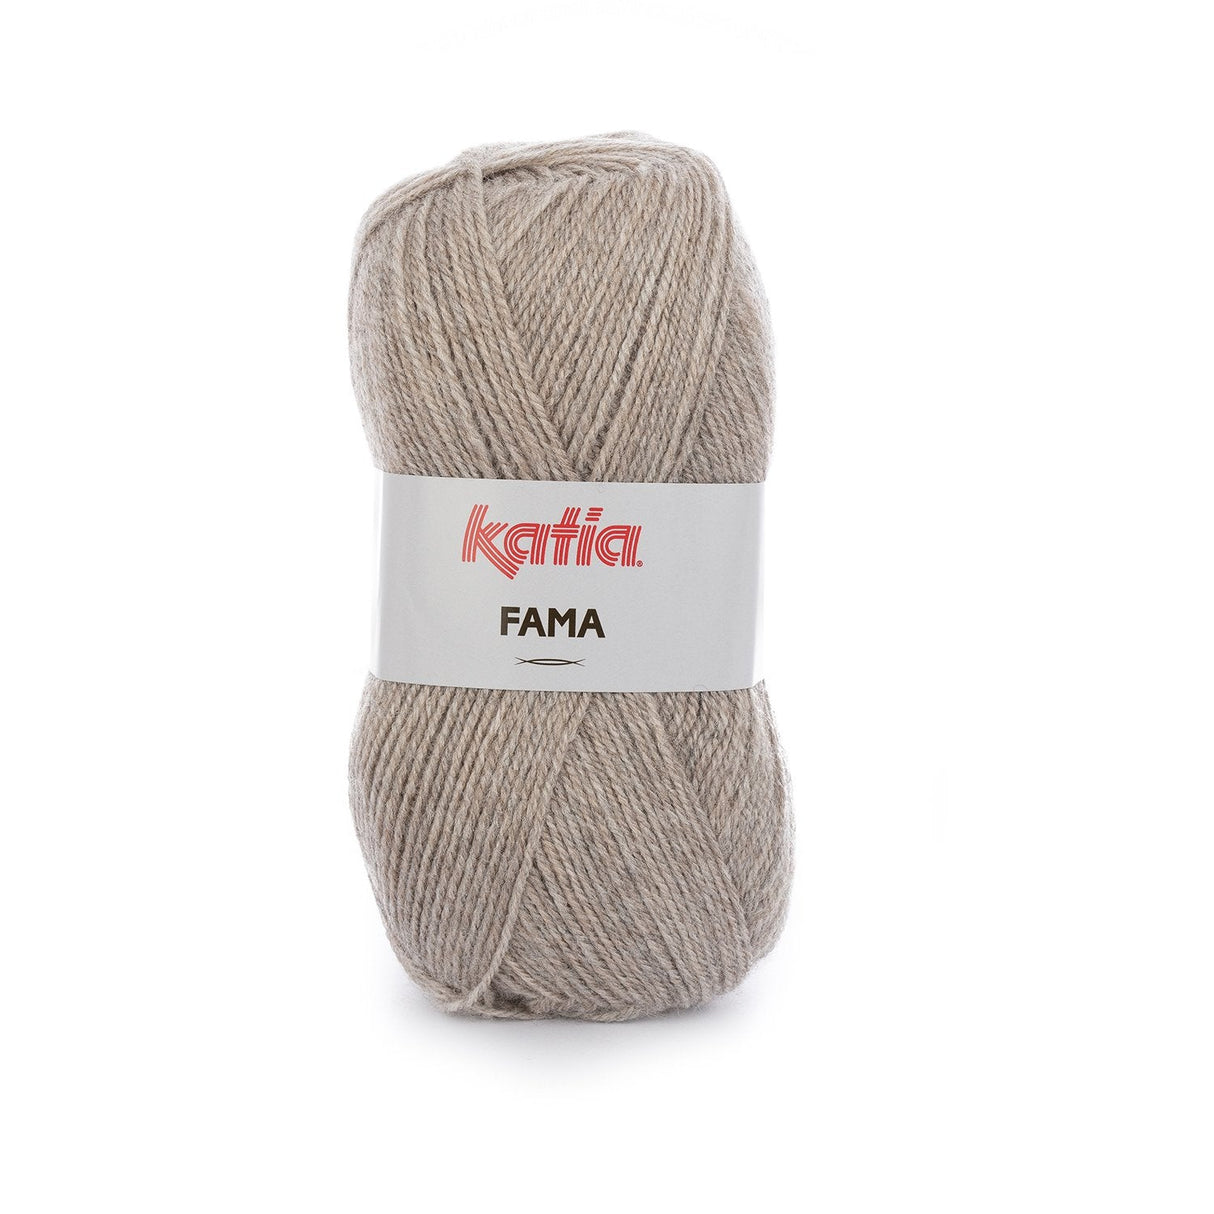 Katia FAMA : une option polyvalente dans une grande variété de couleurs